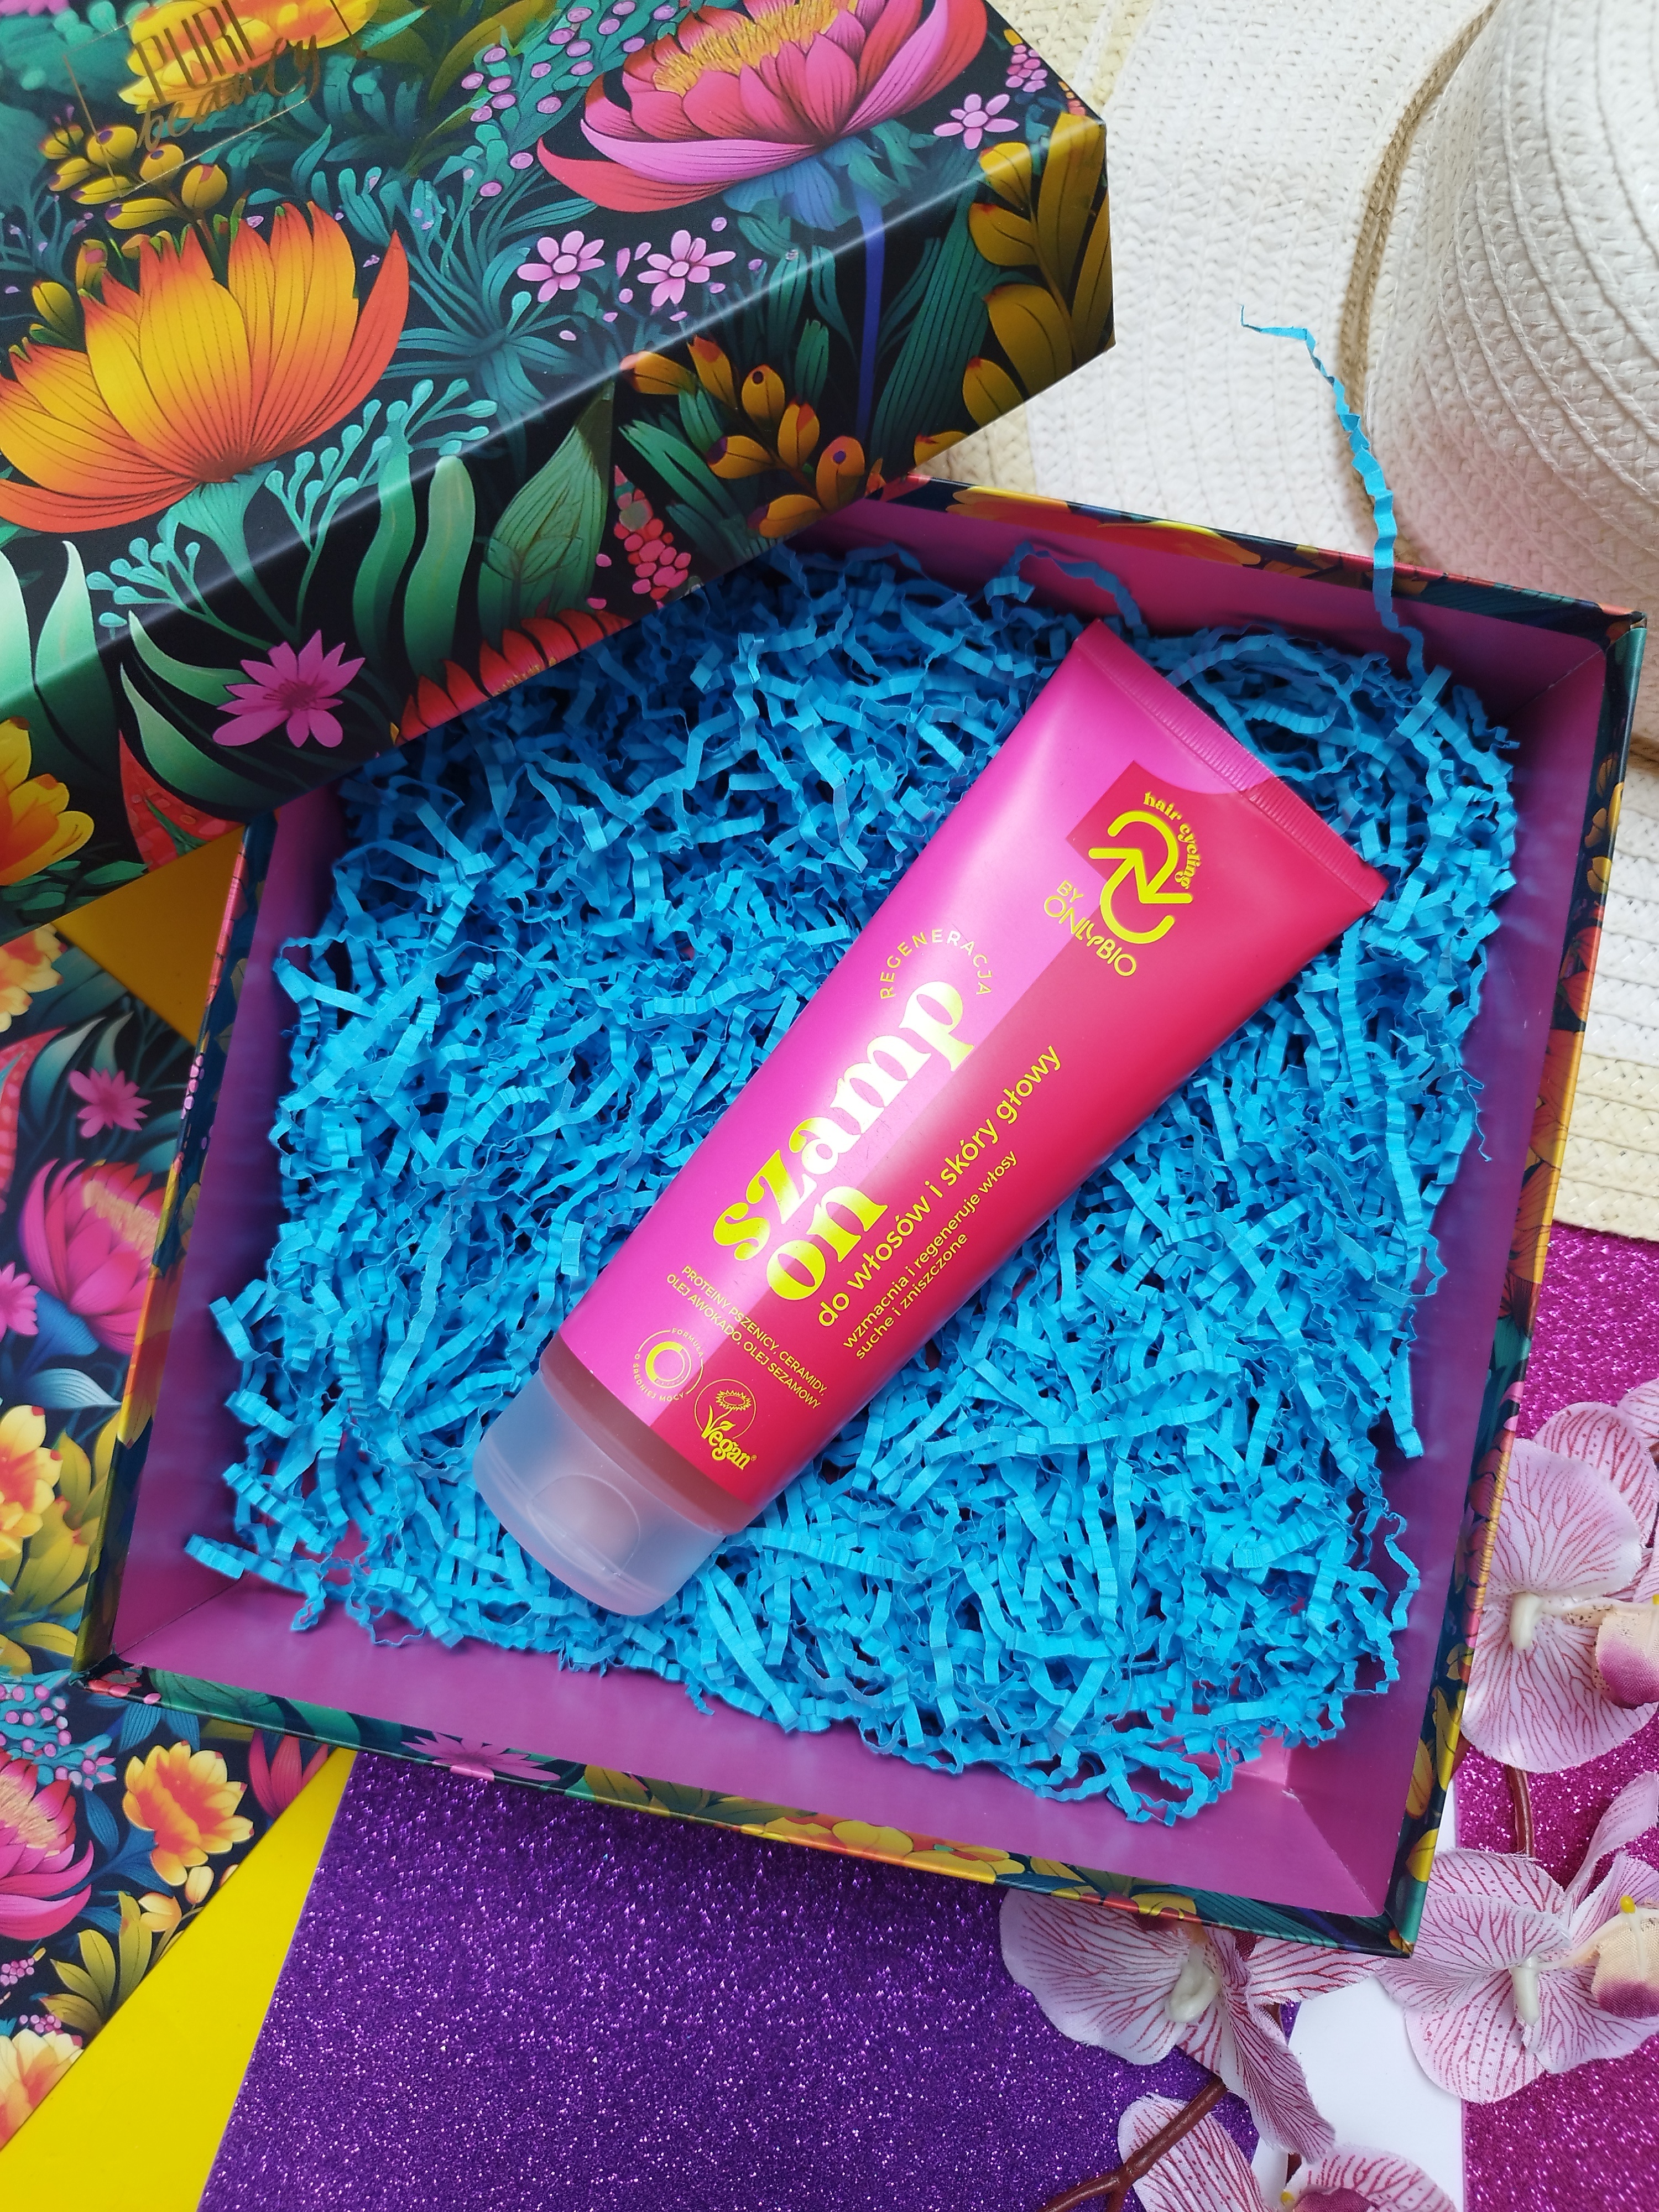 Floral Fusion - kolorowa i zaskakująca edycja pudełka niespodzianki od Pure Beauty